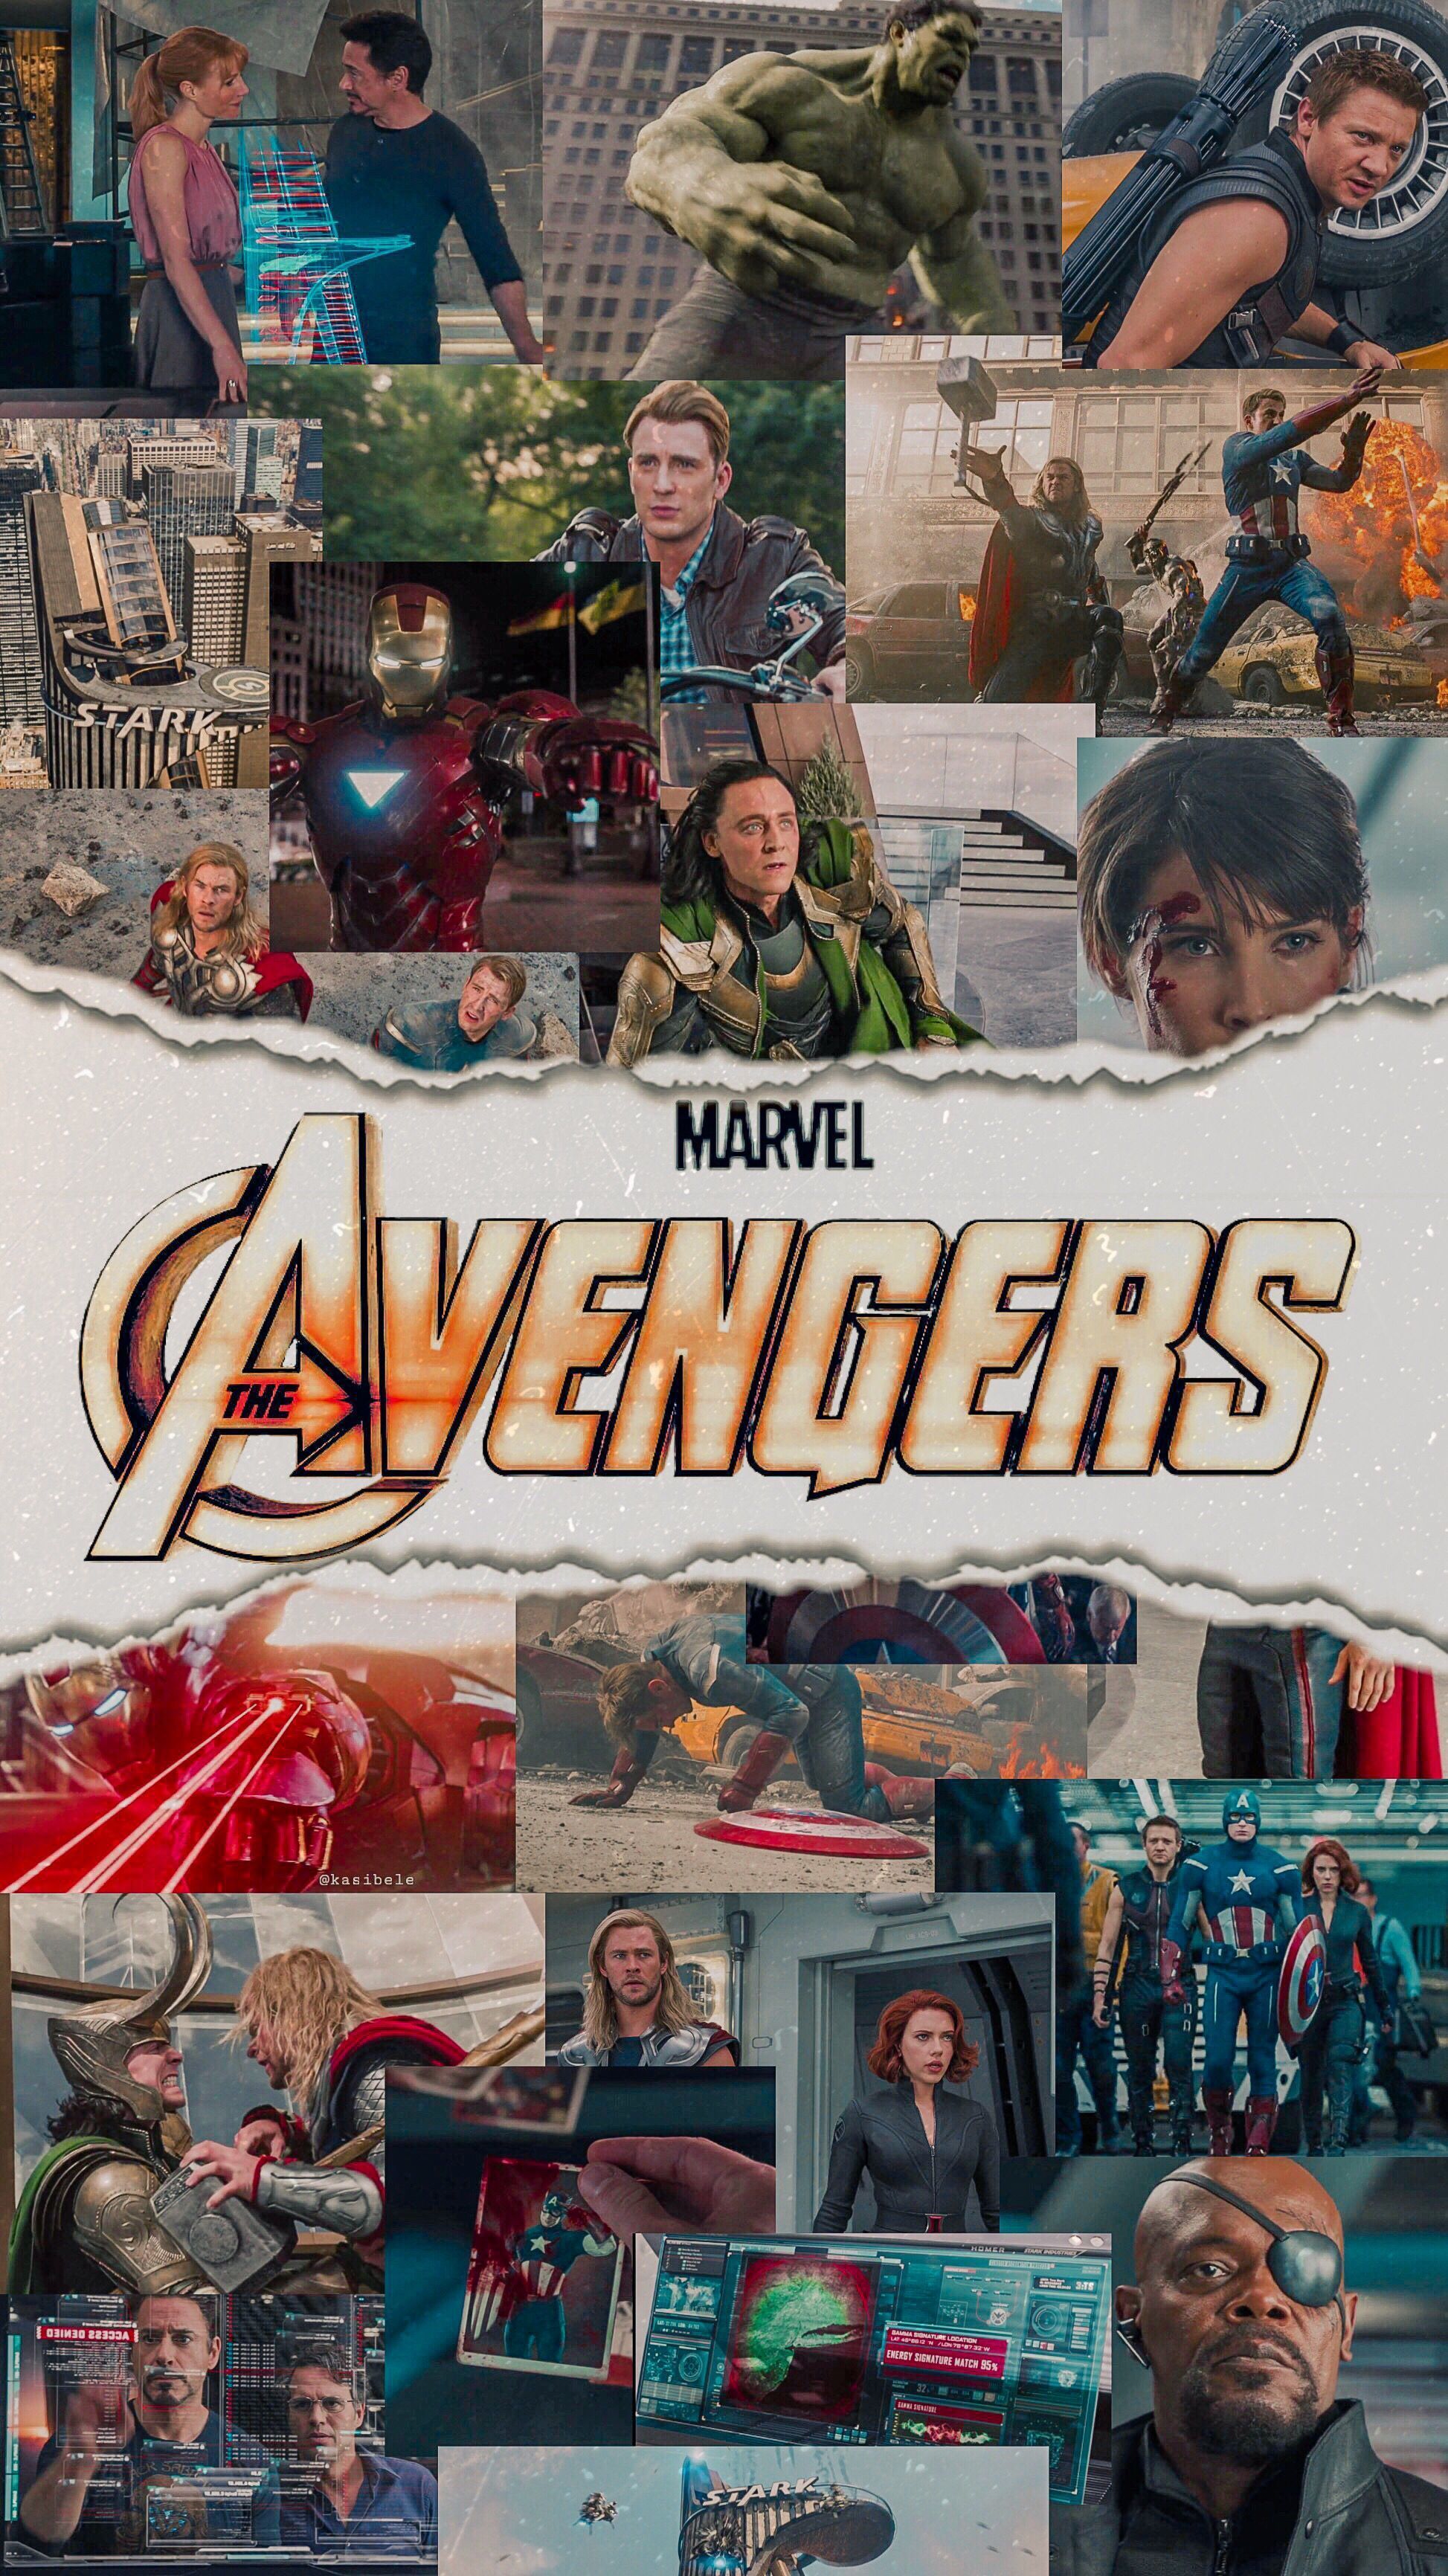 The Avengers. Avengers wallpaper, Marvel comics wallpaper, Marvel background